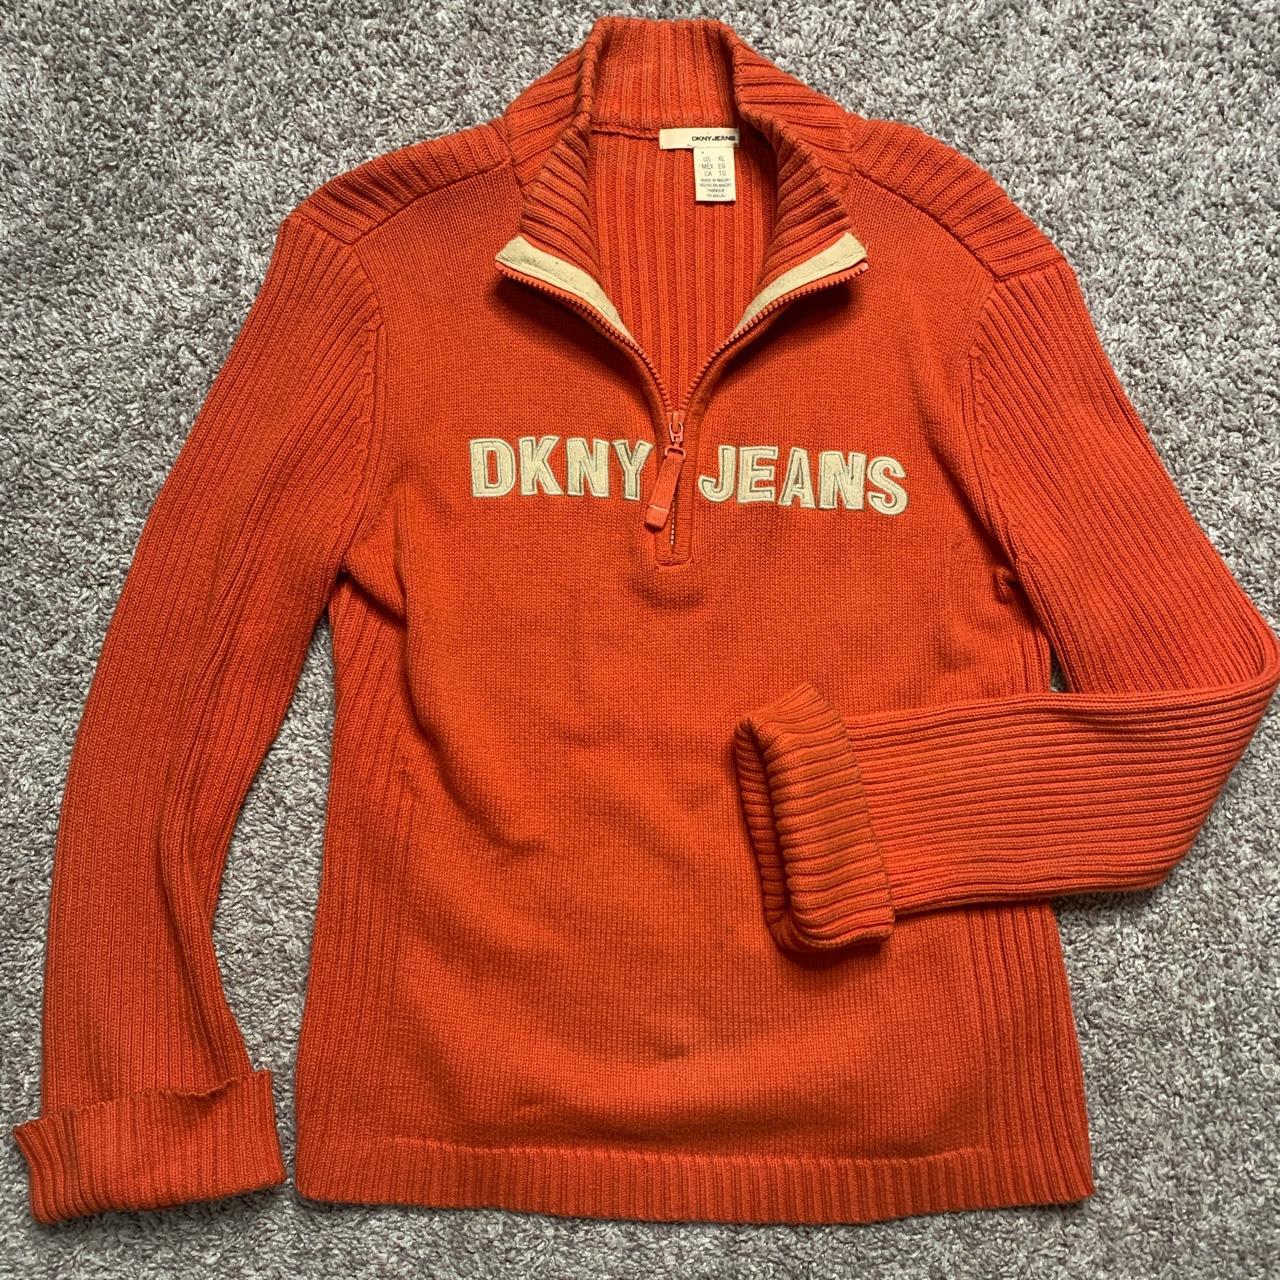 DKNY Women's Orange Jumper